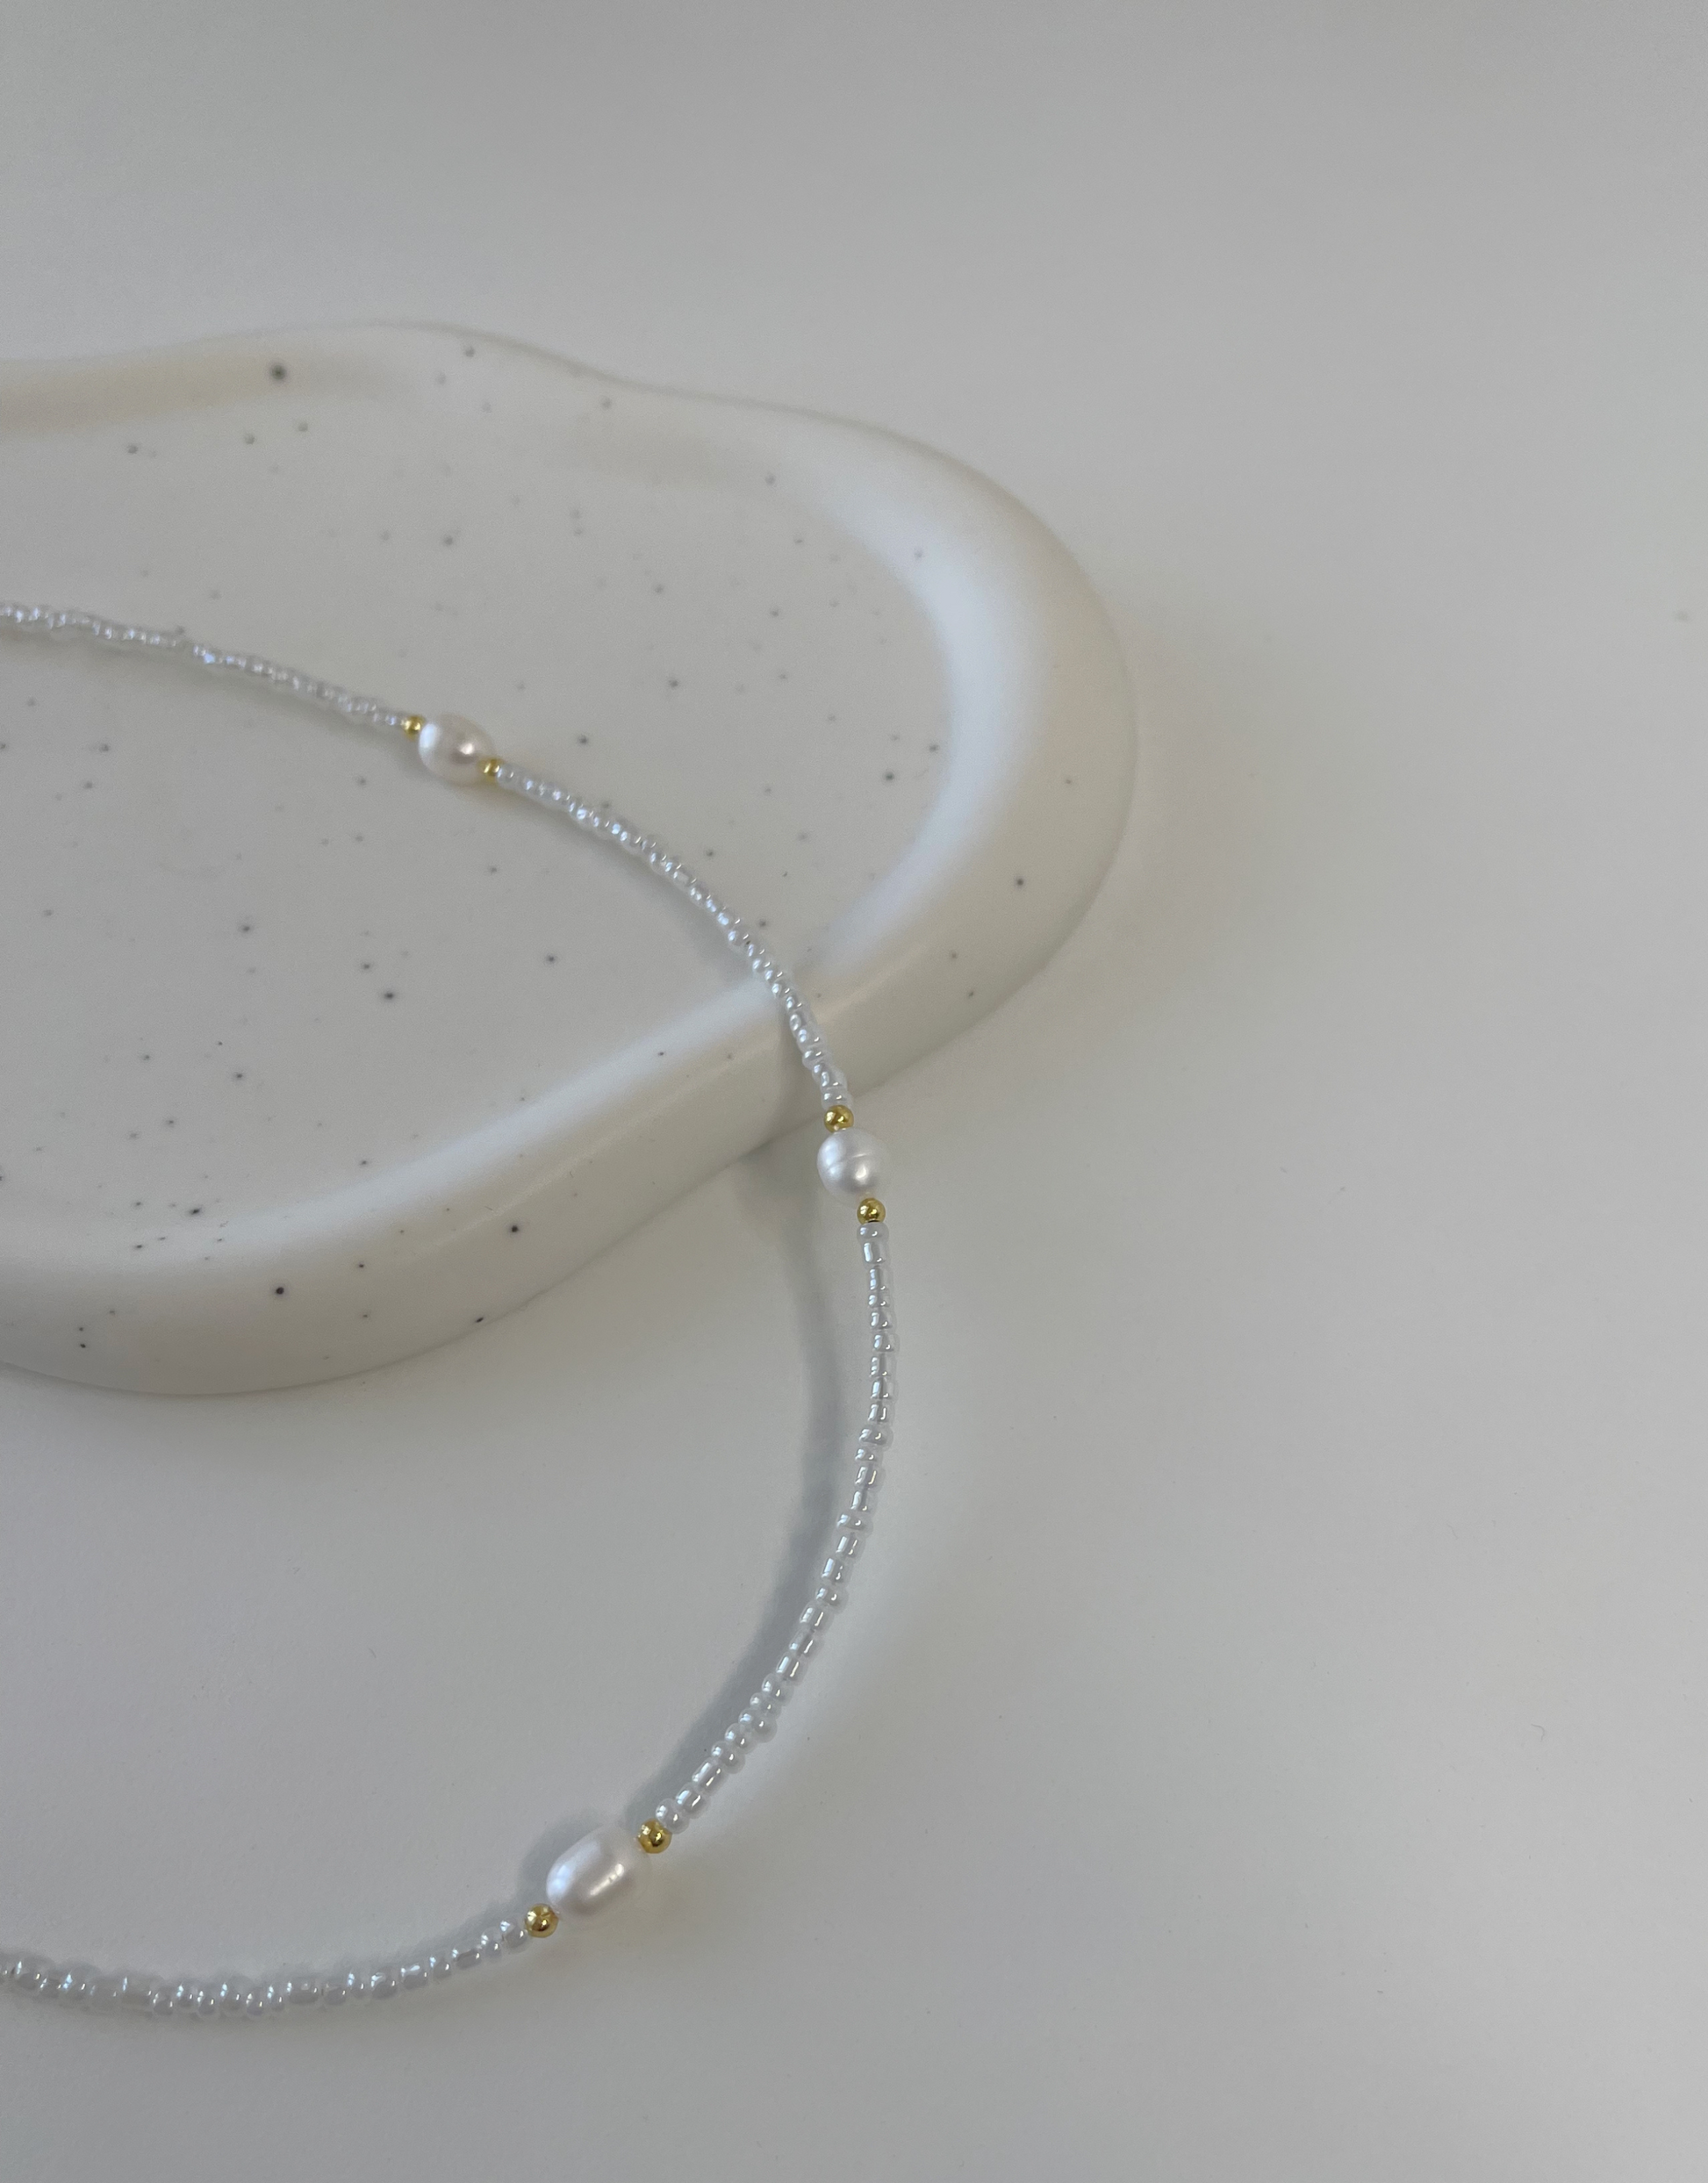 Nellie halskæde fyldt med perler.  Denne halskæde er til dig, som elsker, at pifte dit look op med unikke smykker.   Materiale: Rustfri stål, guldbelagt. Perler. 100% nikkelfri.